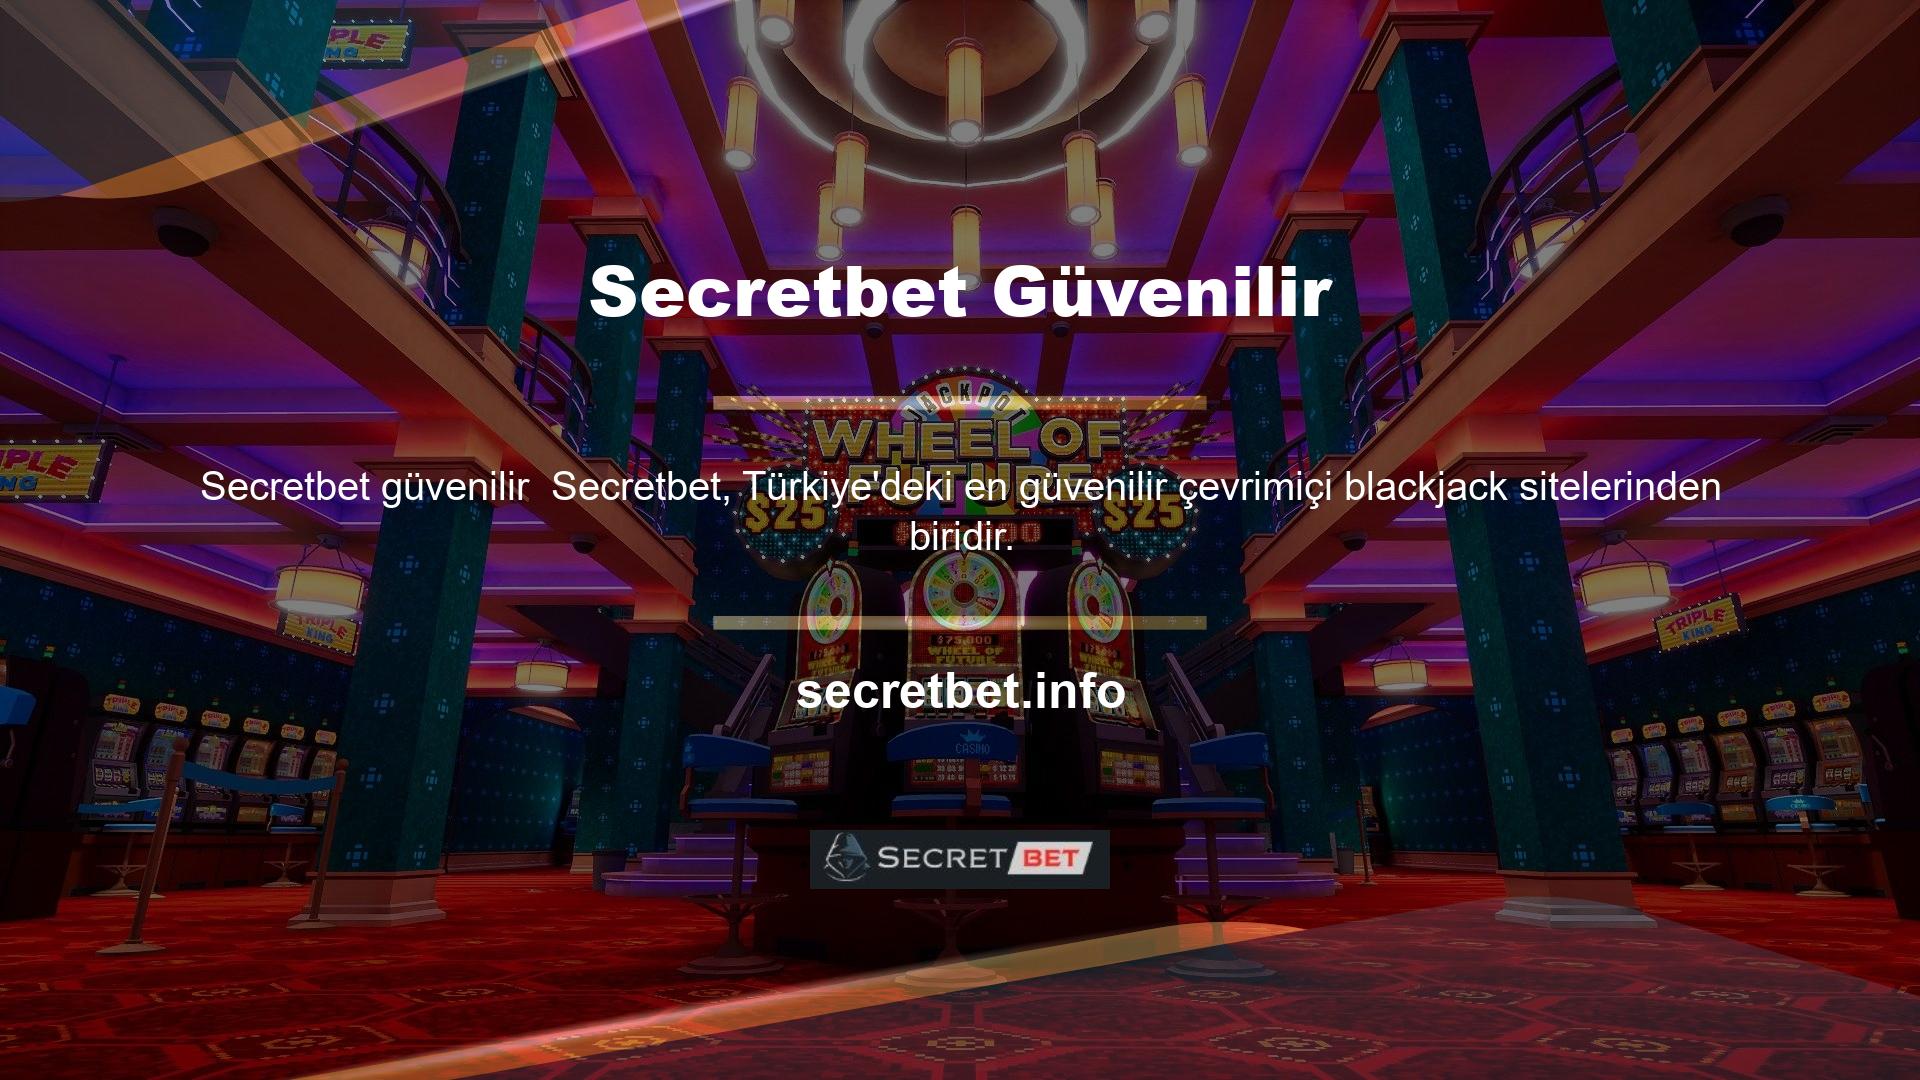 Secretbet, ülkemizdeki tüm slot makine oyunlarının oyuncuları tarafından en çok talep edilen şirketlerden biridir